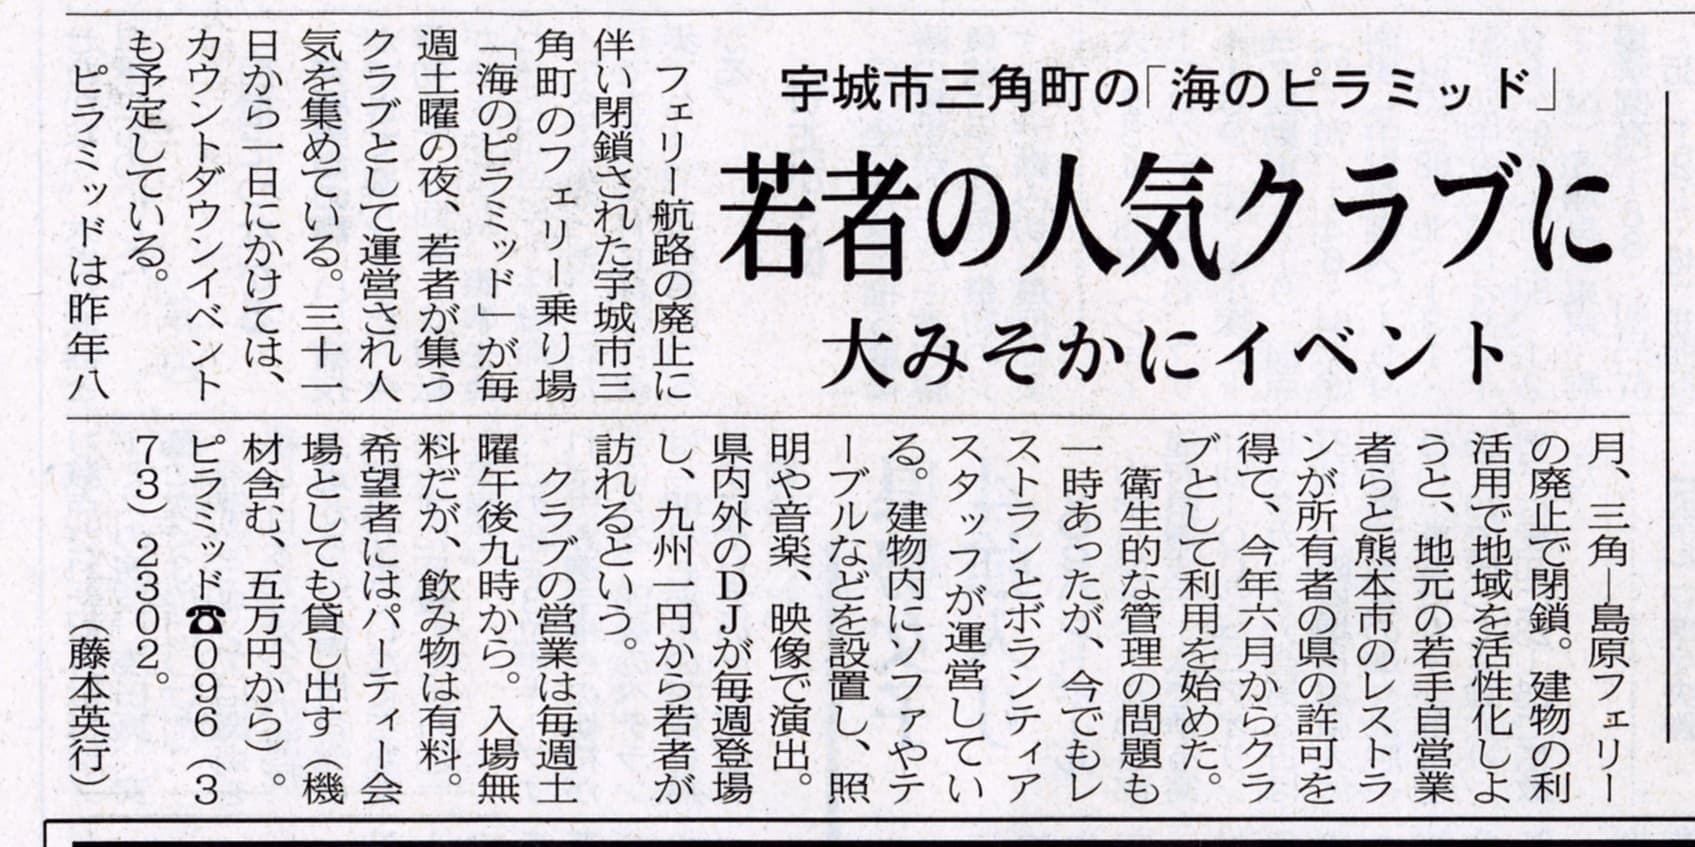 2007年12月28日 熊日新聞「若者の人気のクラブに」